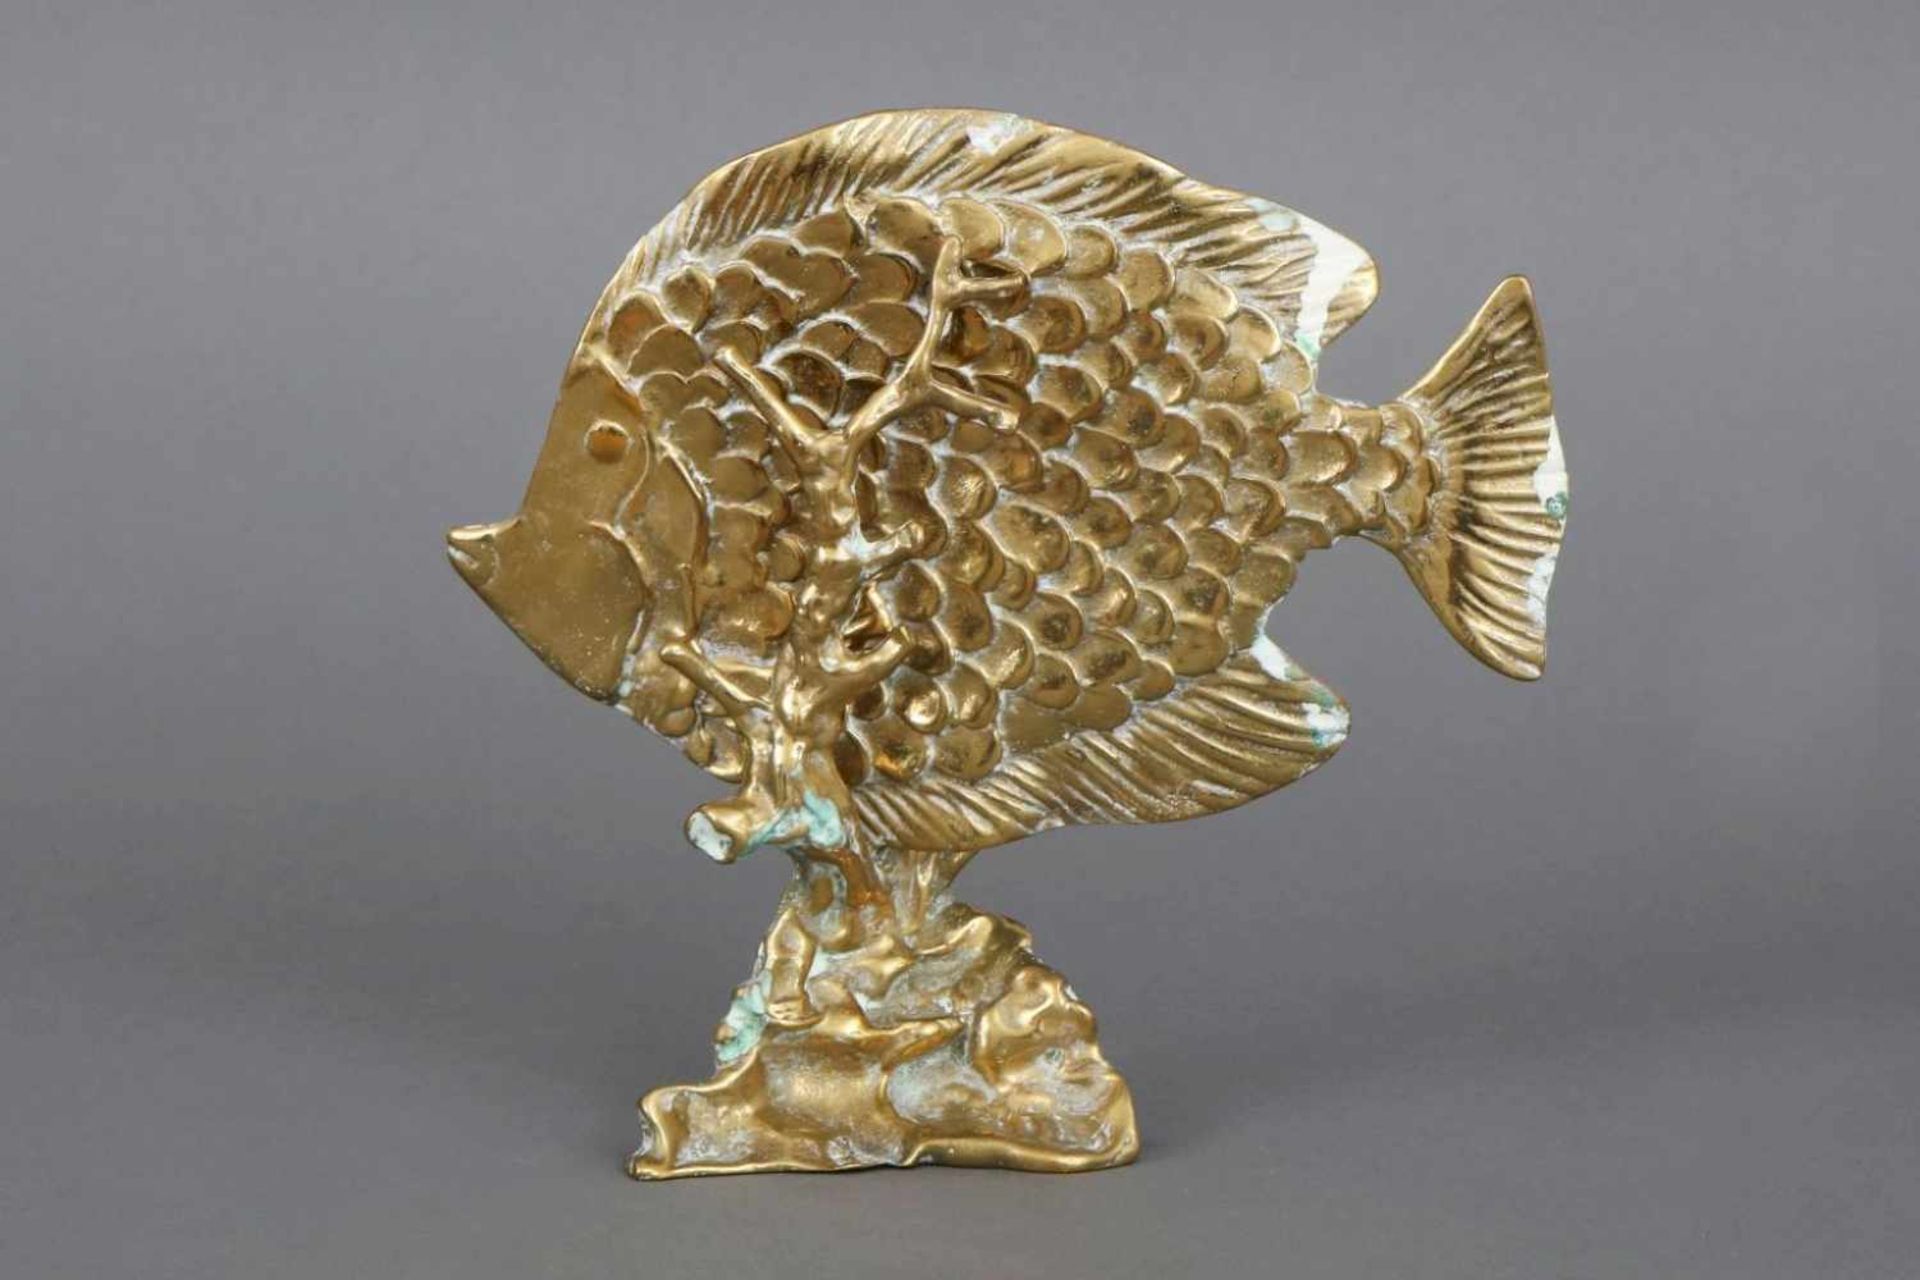 Dekorative Fisch-FigurMessing, 2-teilig, ¨Fisch über Seegras schwimmend¨, H ca. 20cm - Bild 2 aus 2